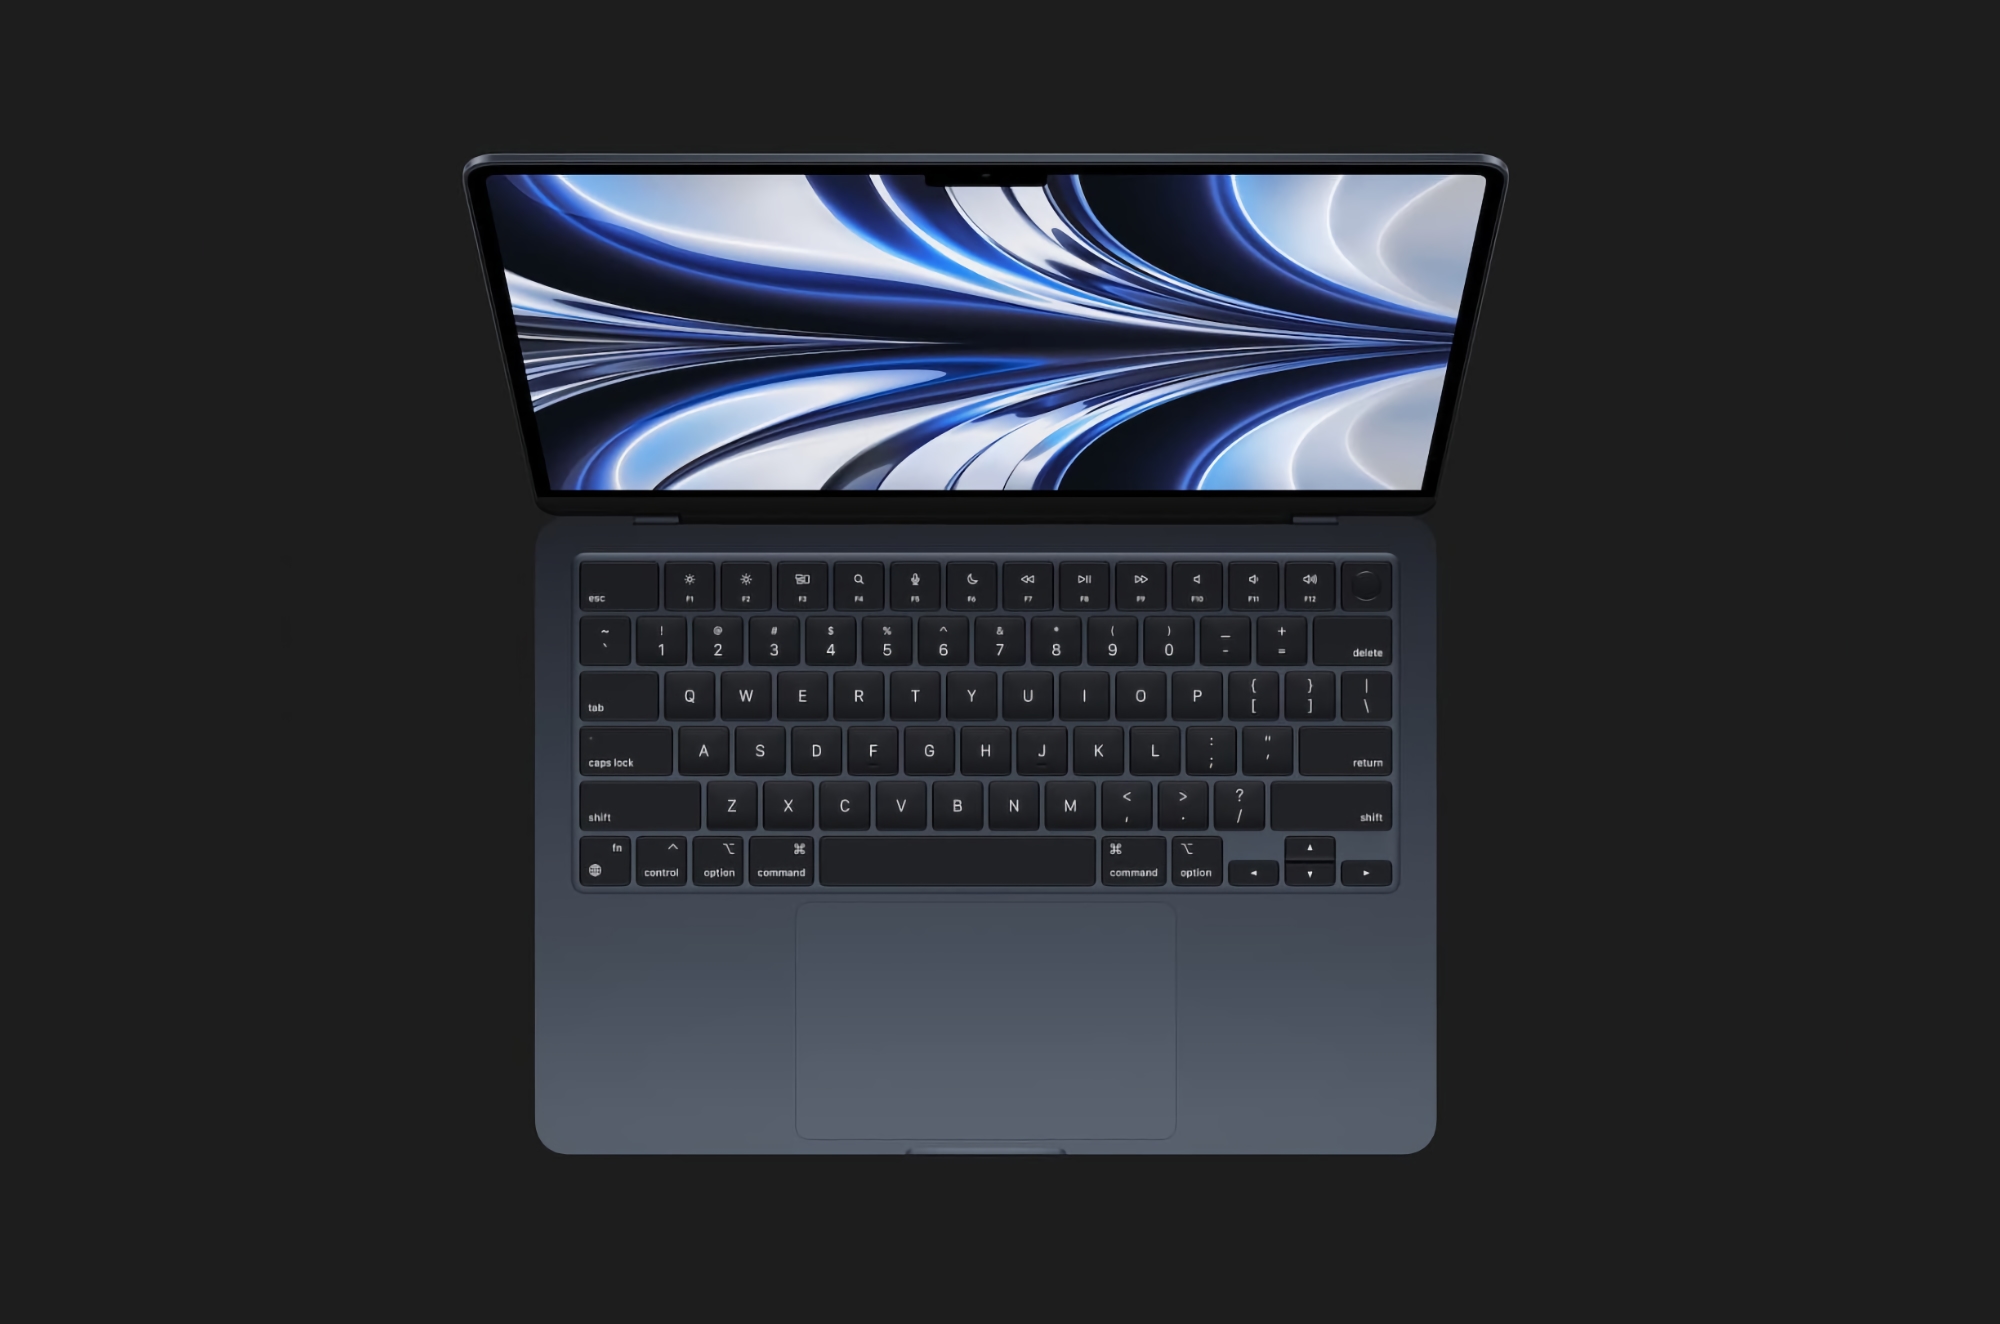 El nuevo MacBook Air con chip M2 se lanza en Norteamérica, Europa y Asia